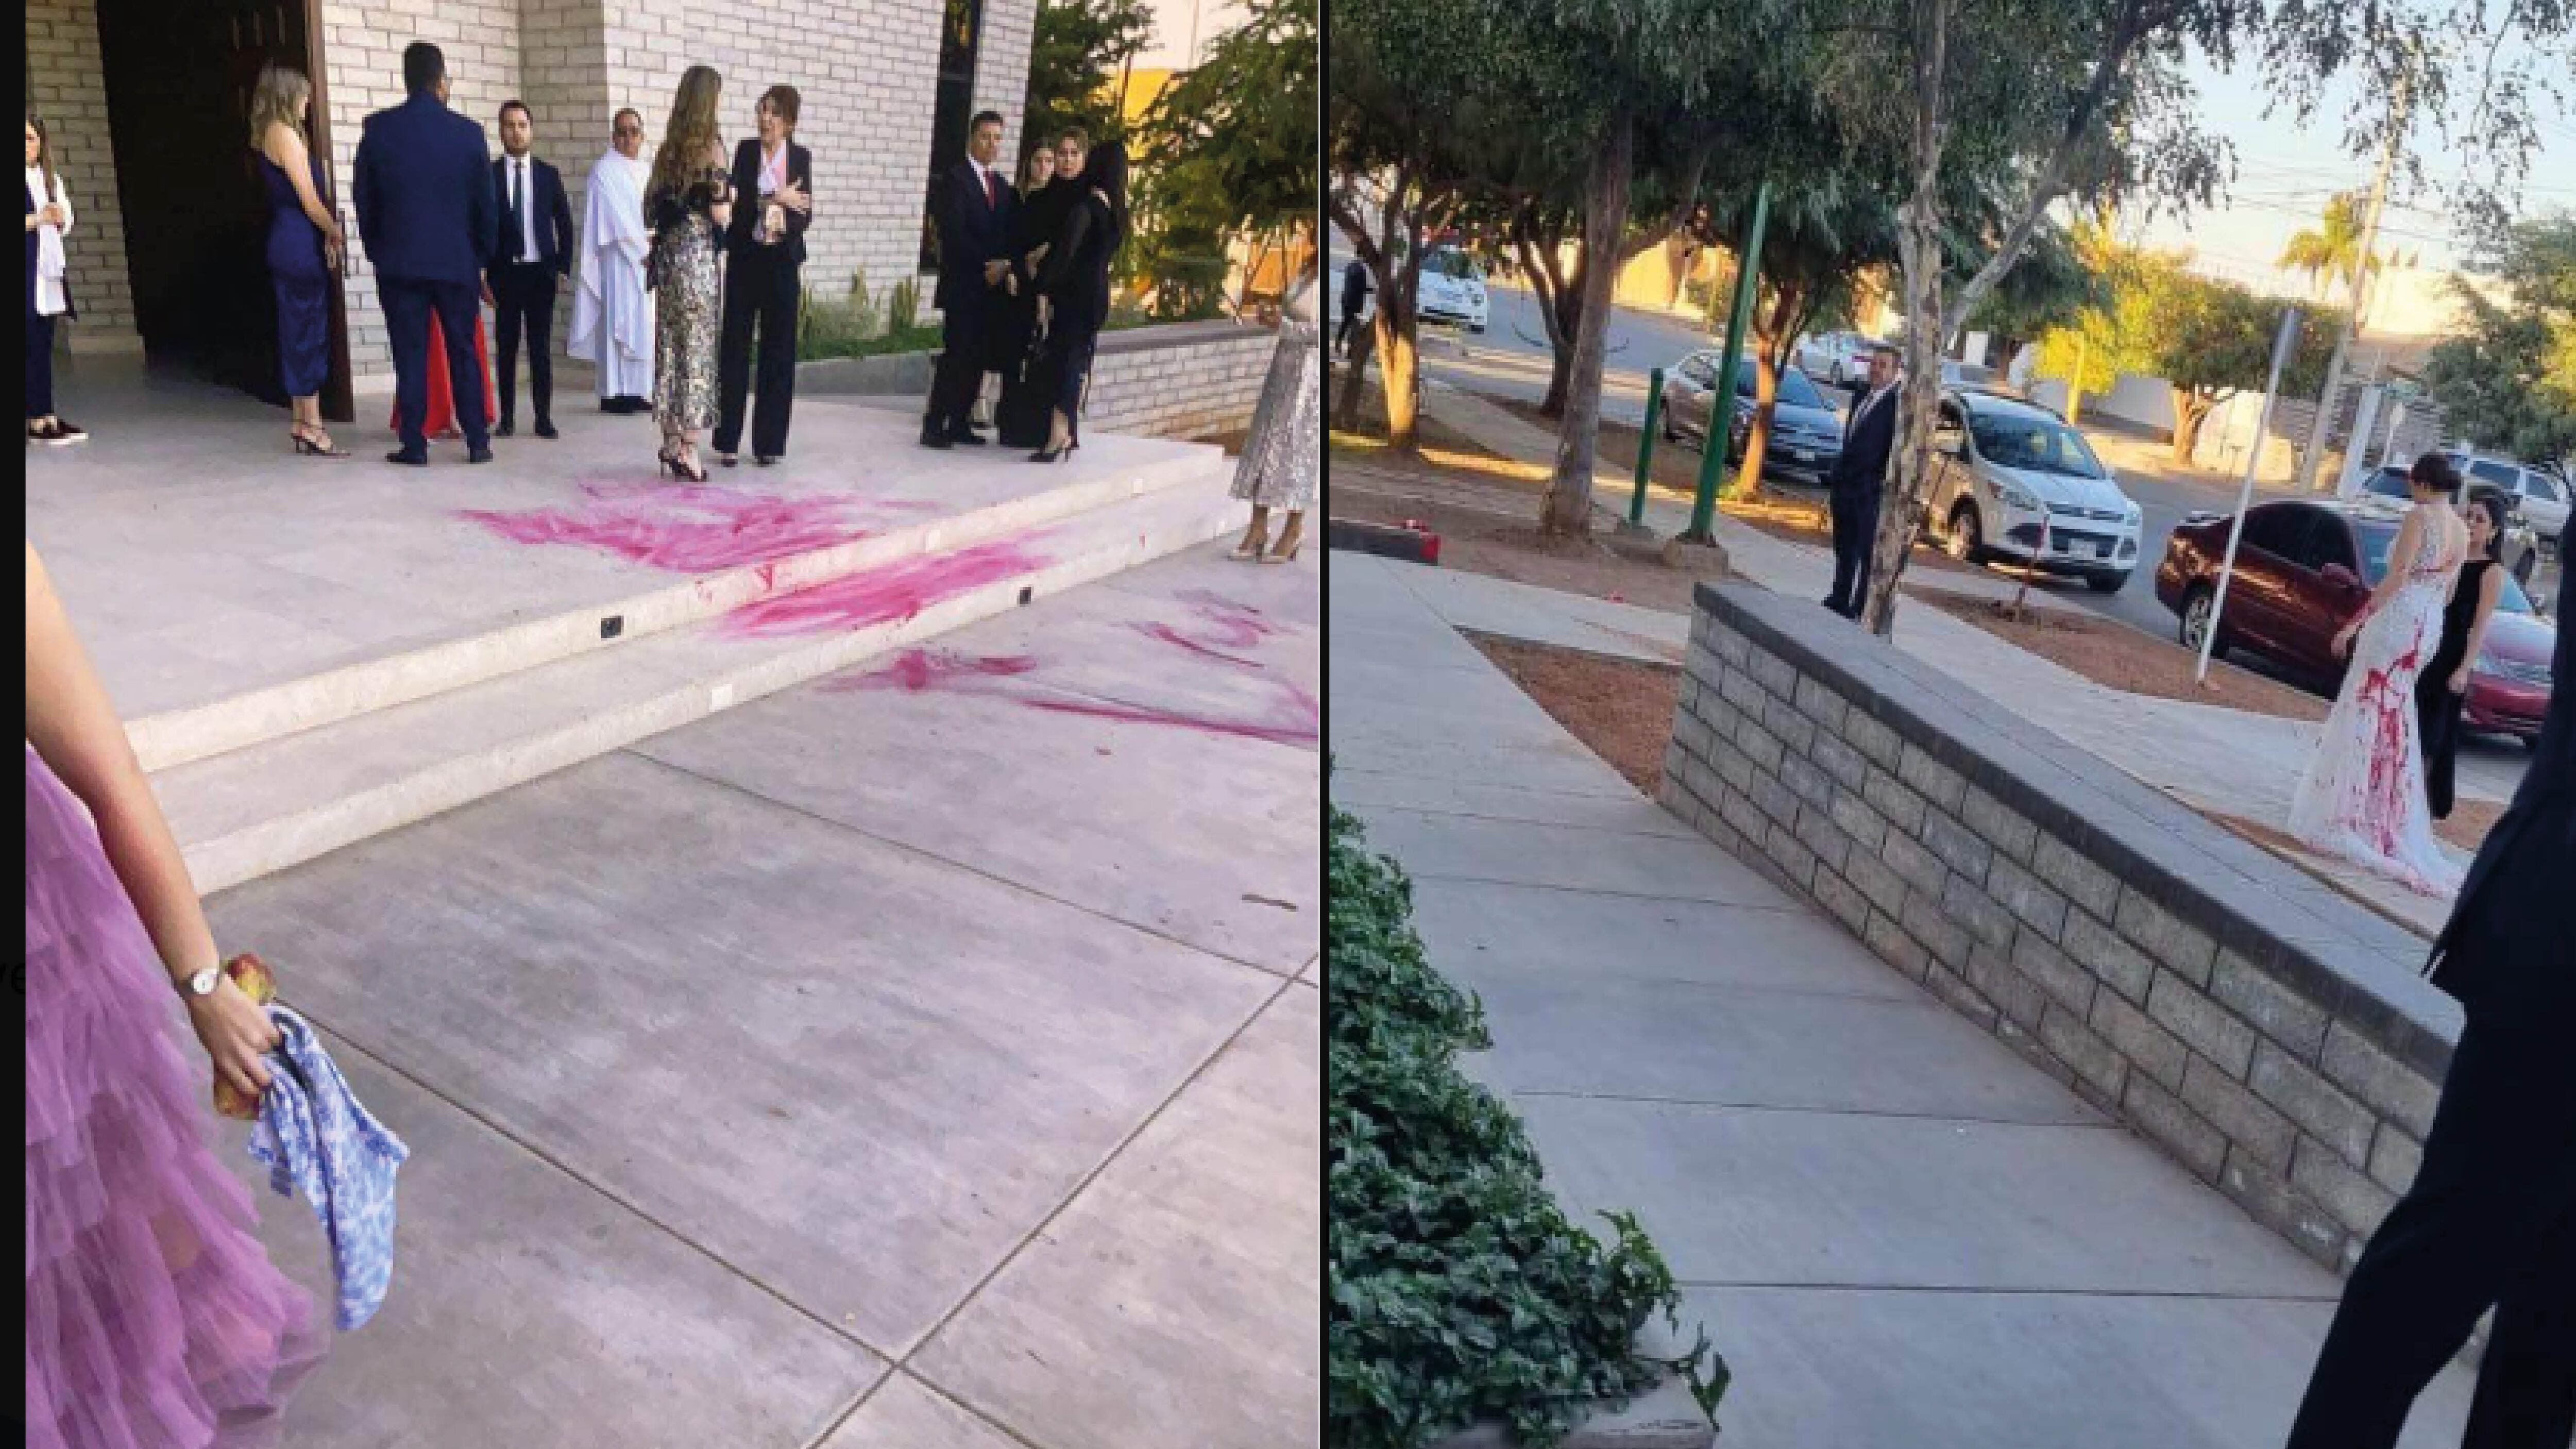 Su suegra le lanzó pintura roja al vestido de novia en el día de su boda